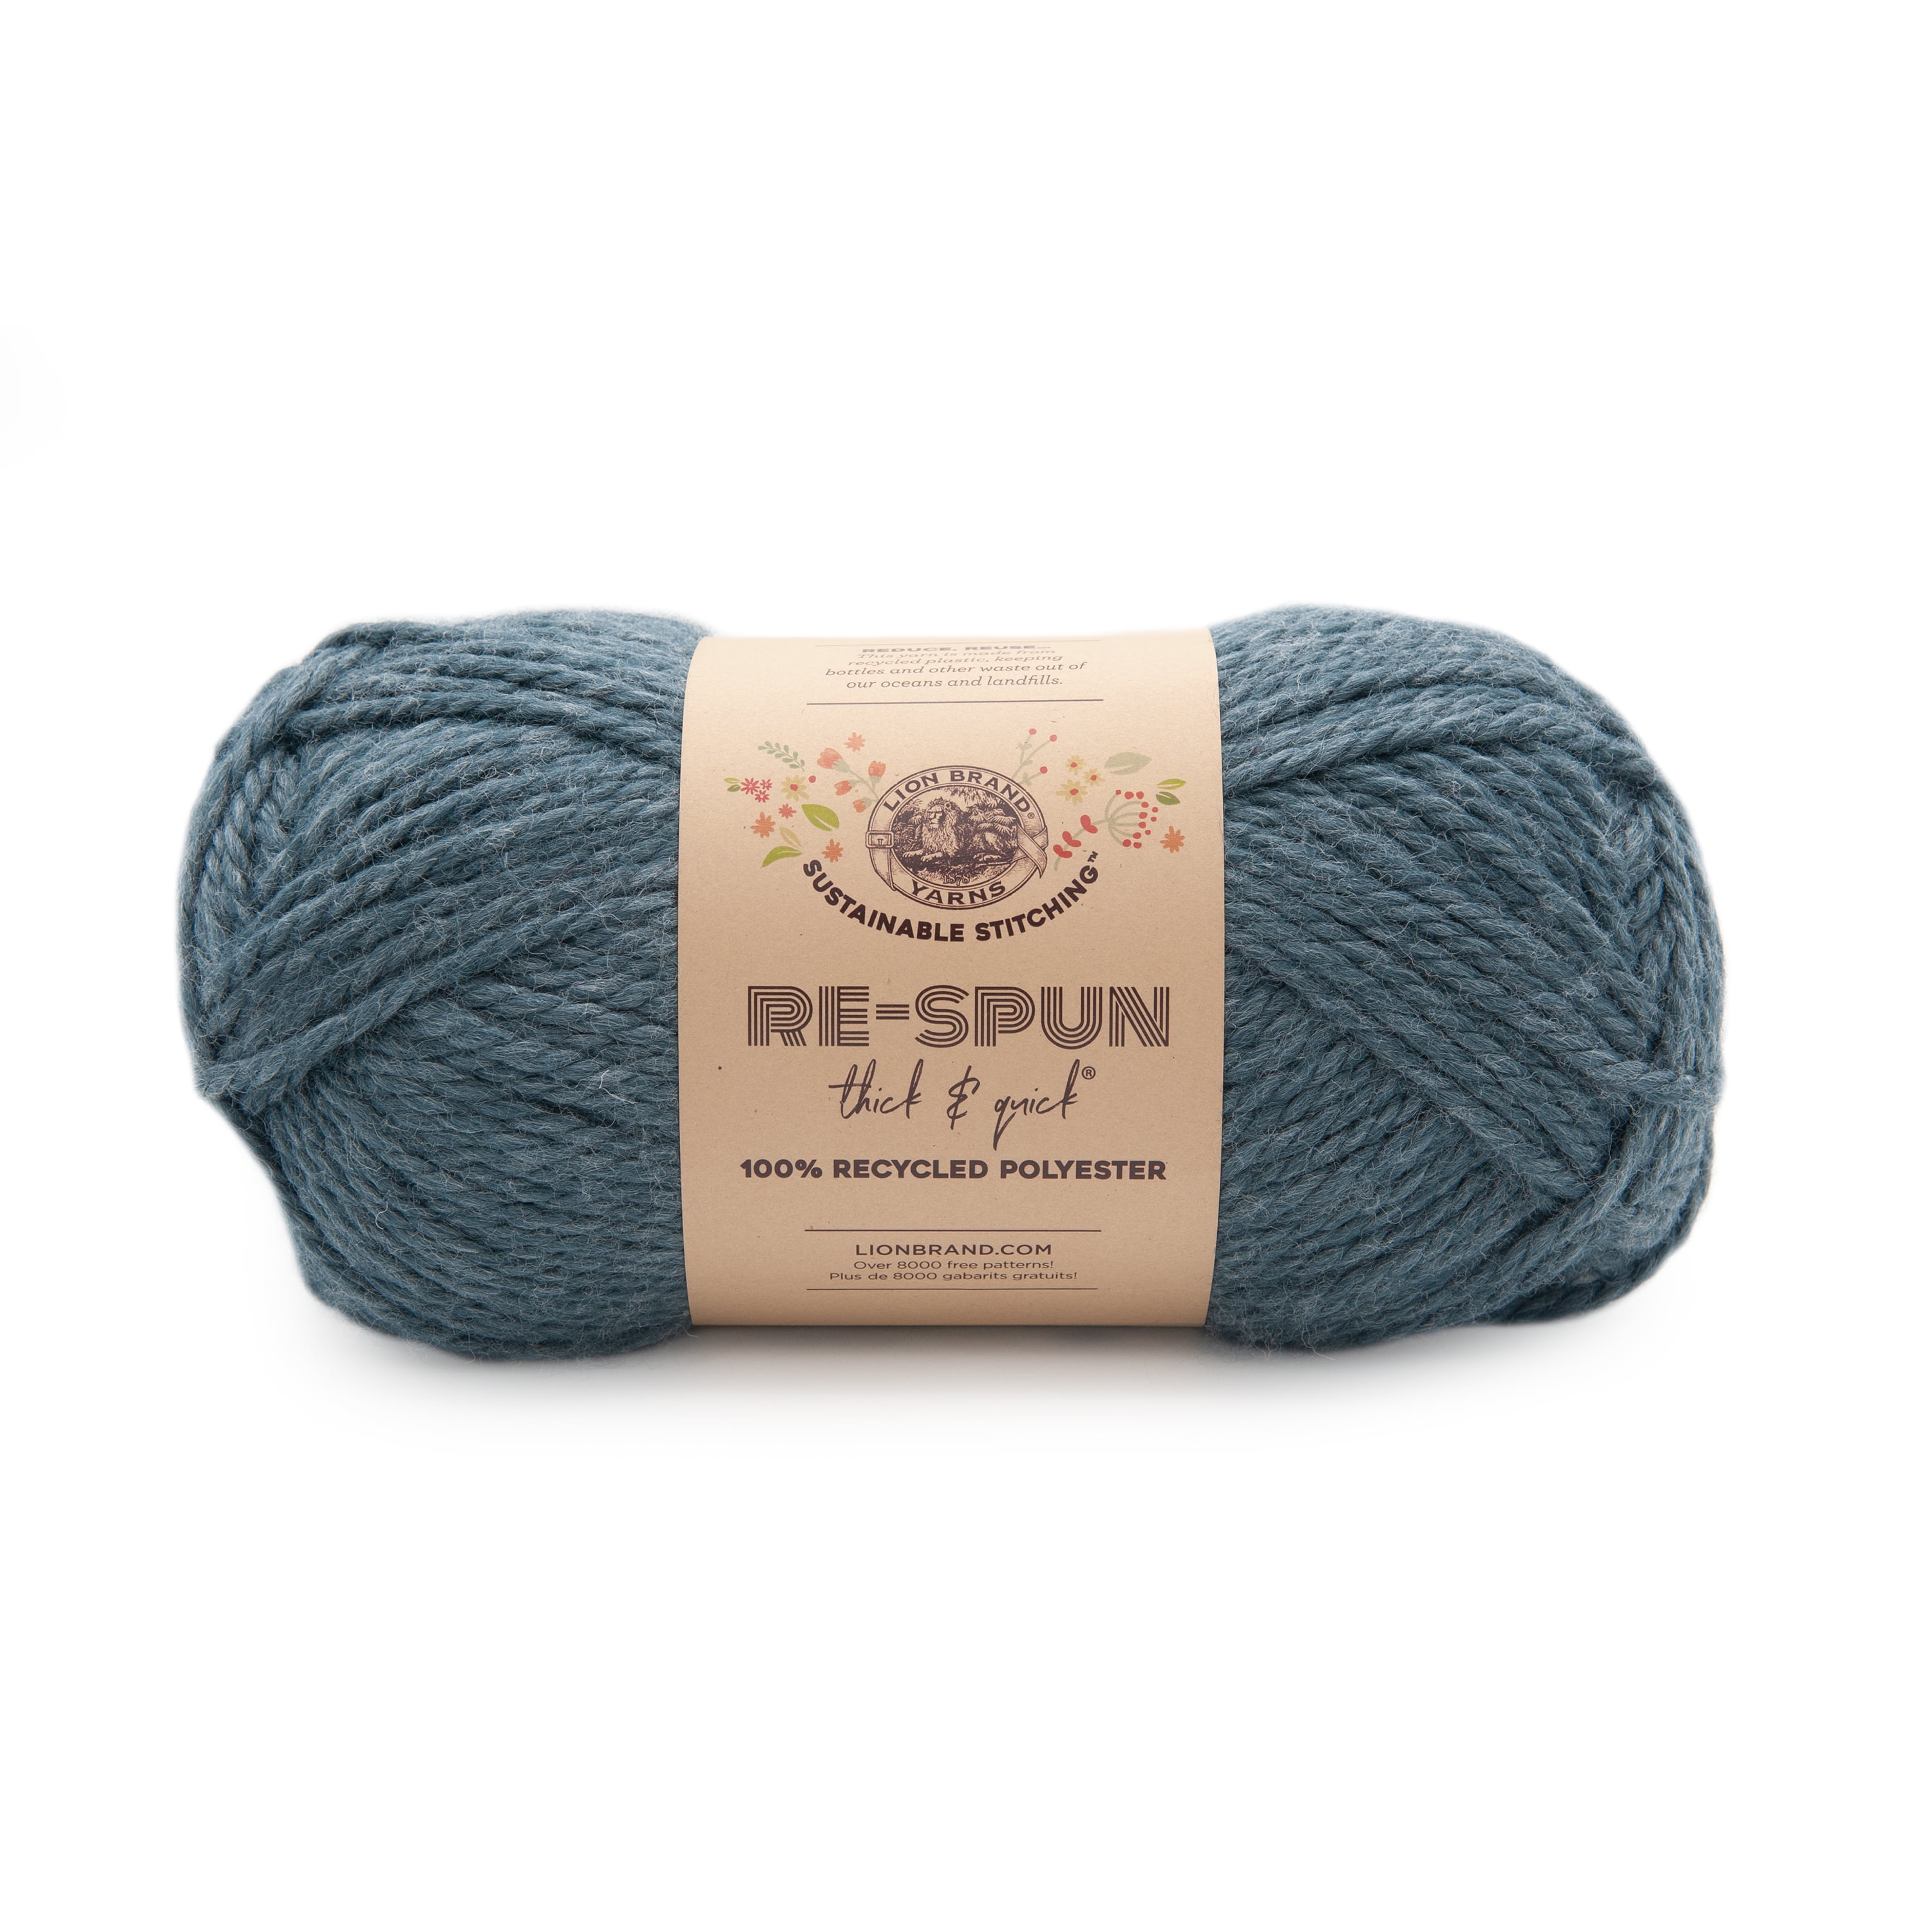 Yarn Weight 5 - Bulky / Chunky – Lion Brand Yarn